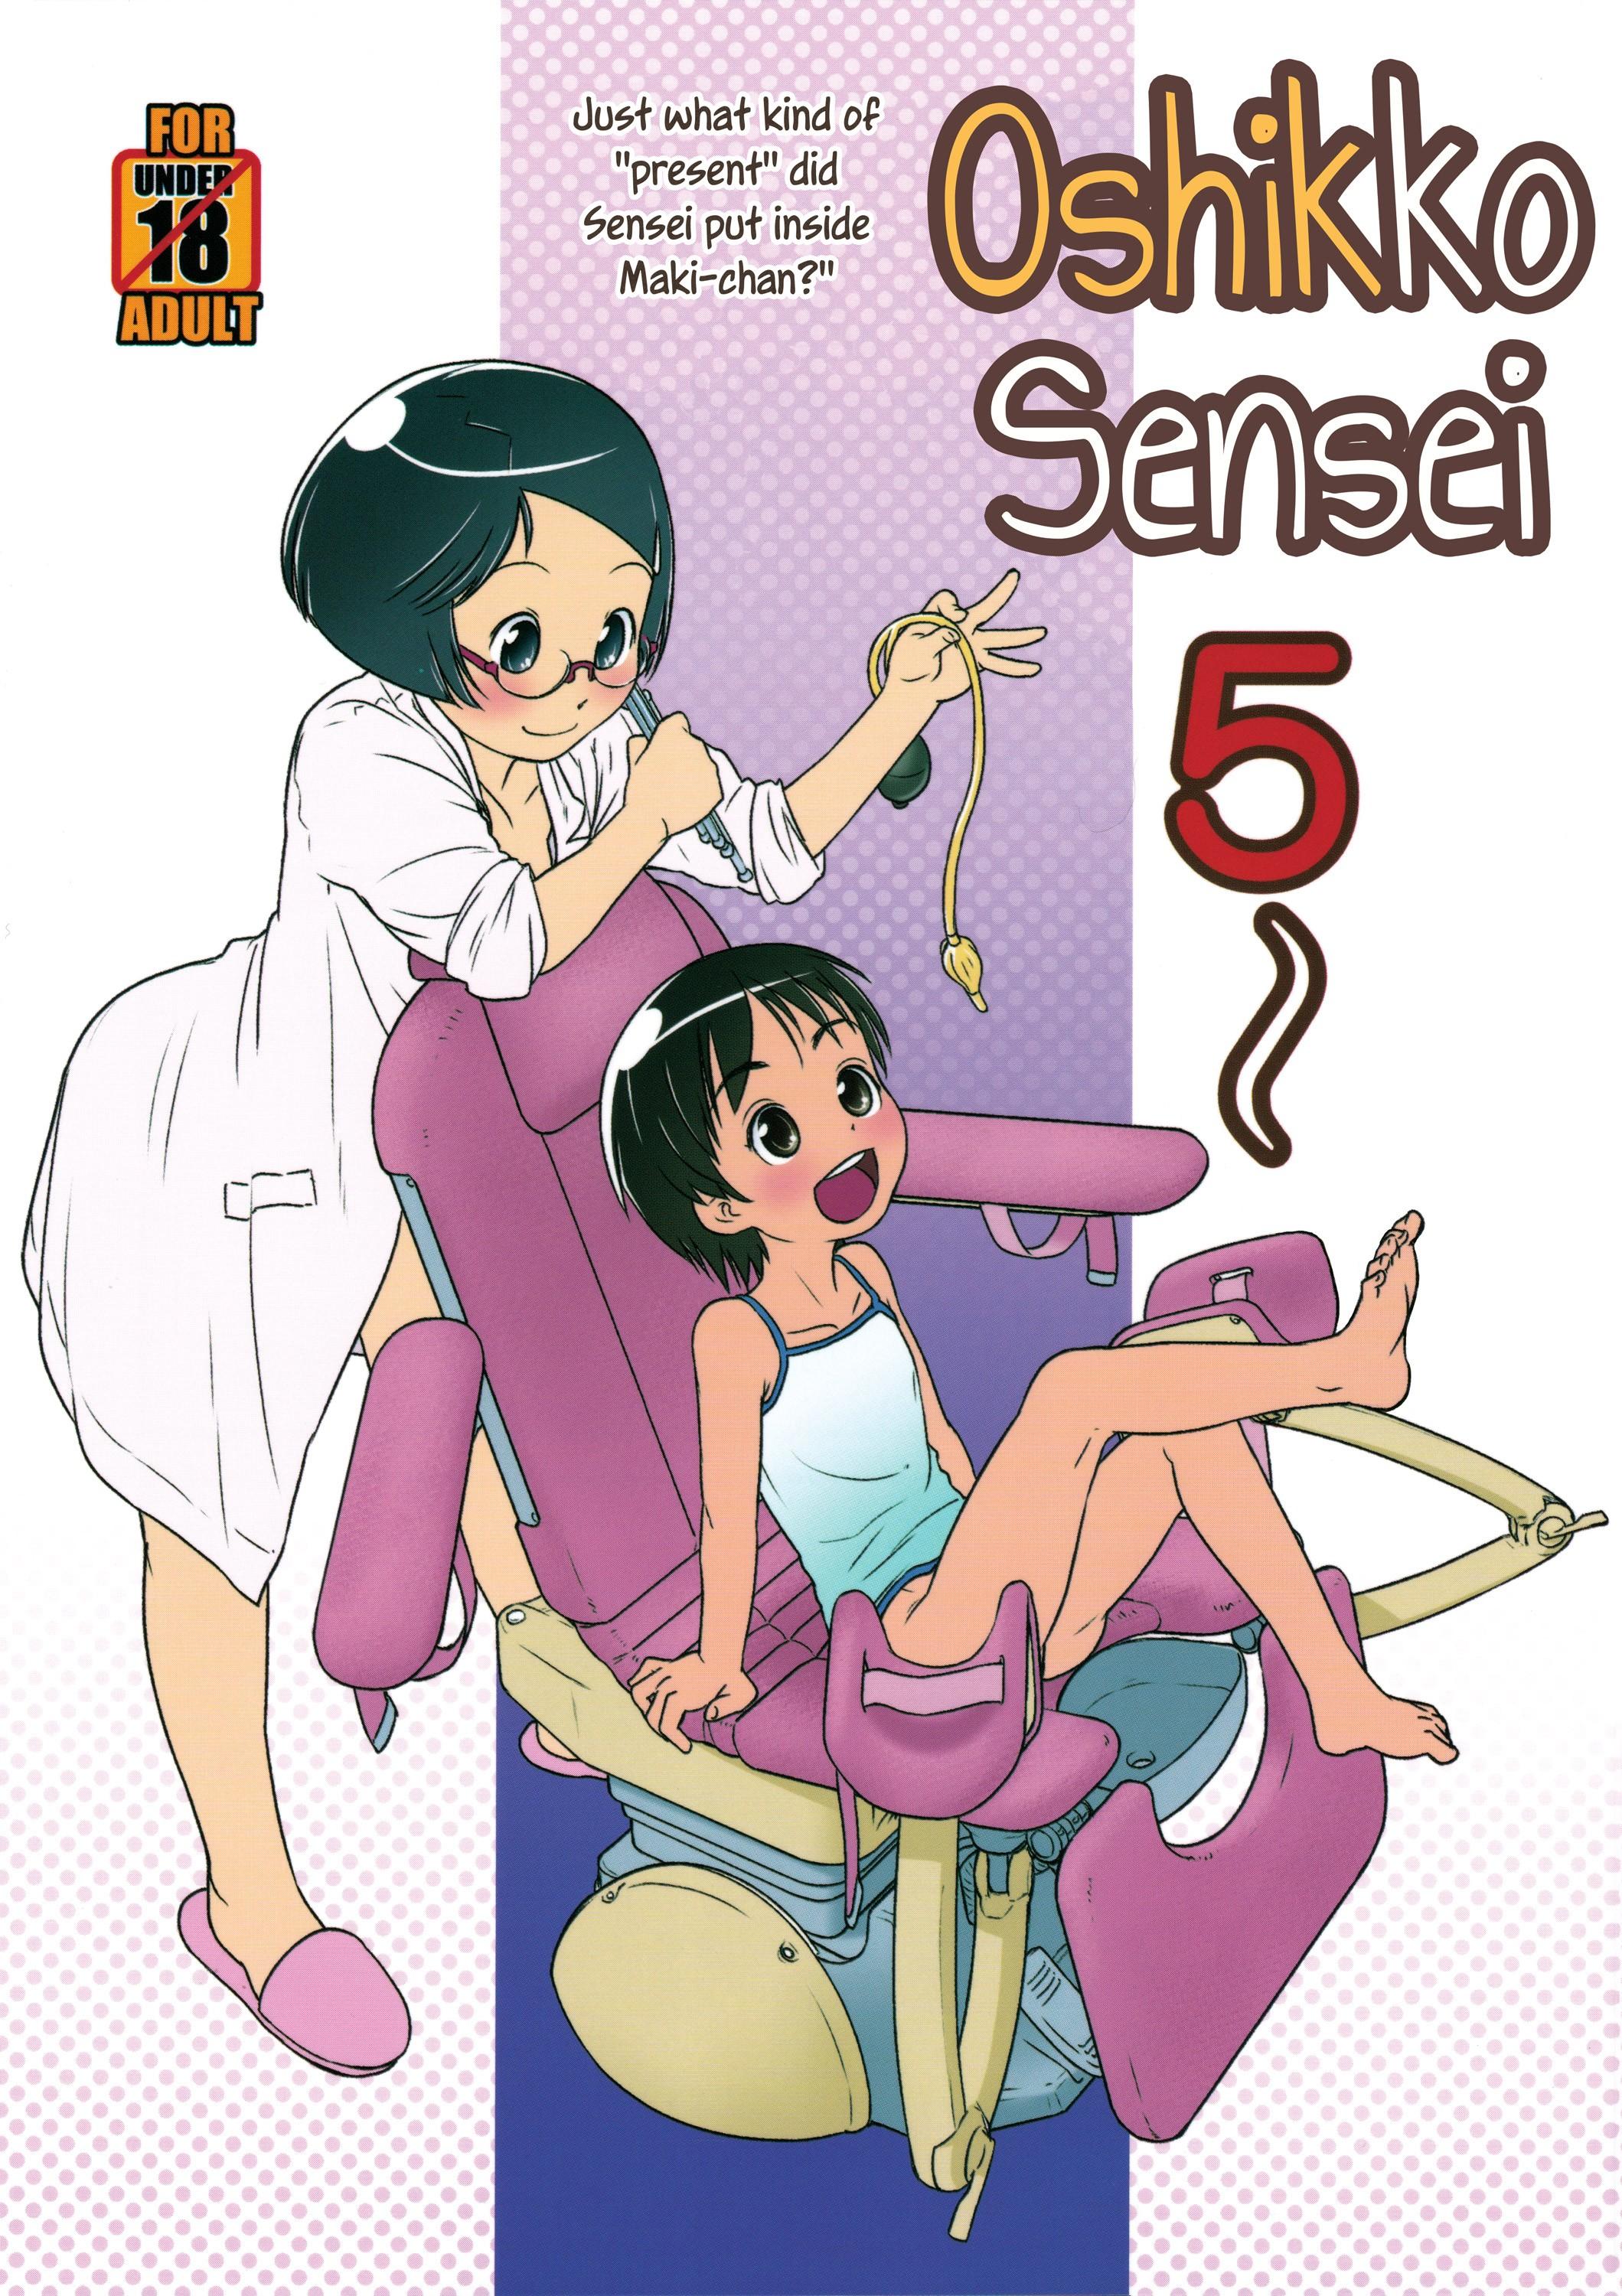 Free Rough Sex Oshikko Sensei 5 Hunks - Page 2